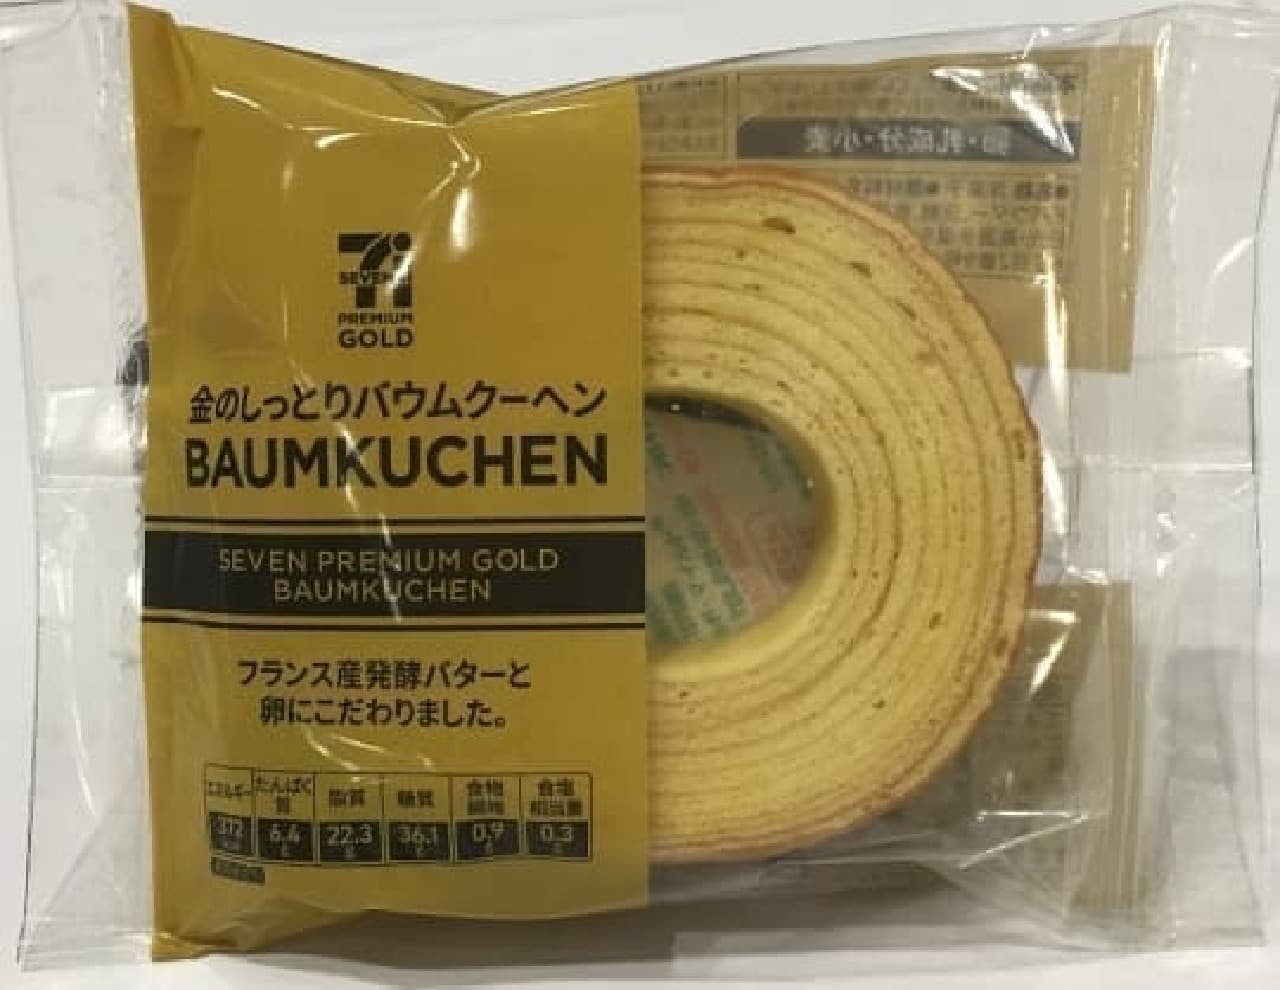 7-ELEVEN Premium Gold Gold Moist Baumkuchen